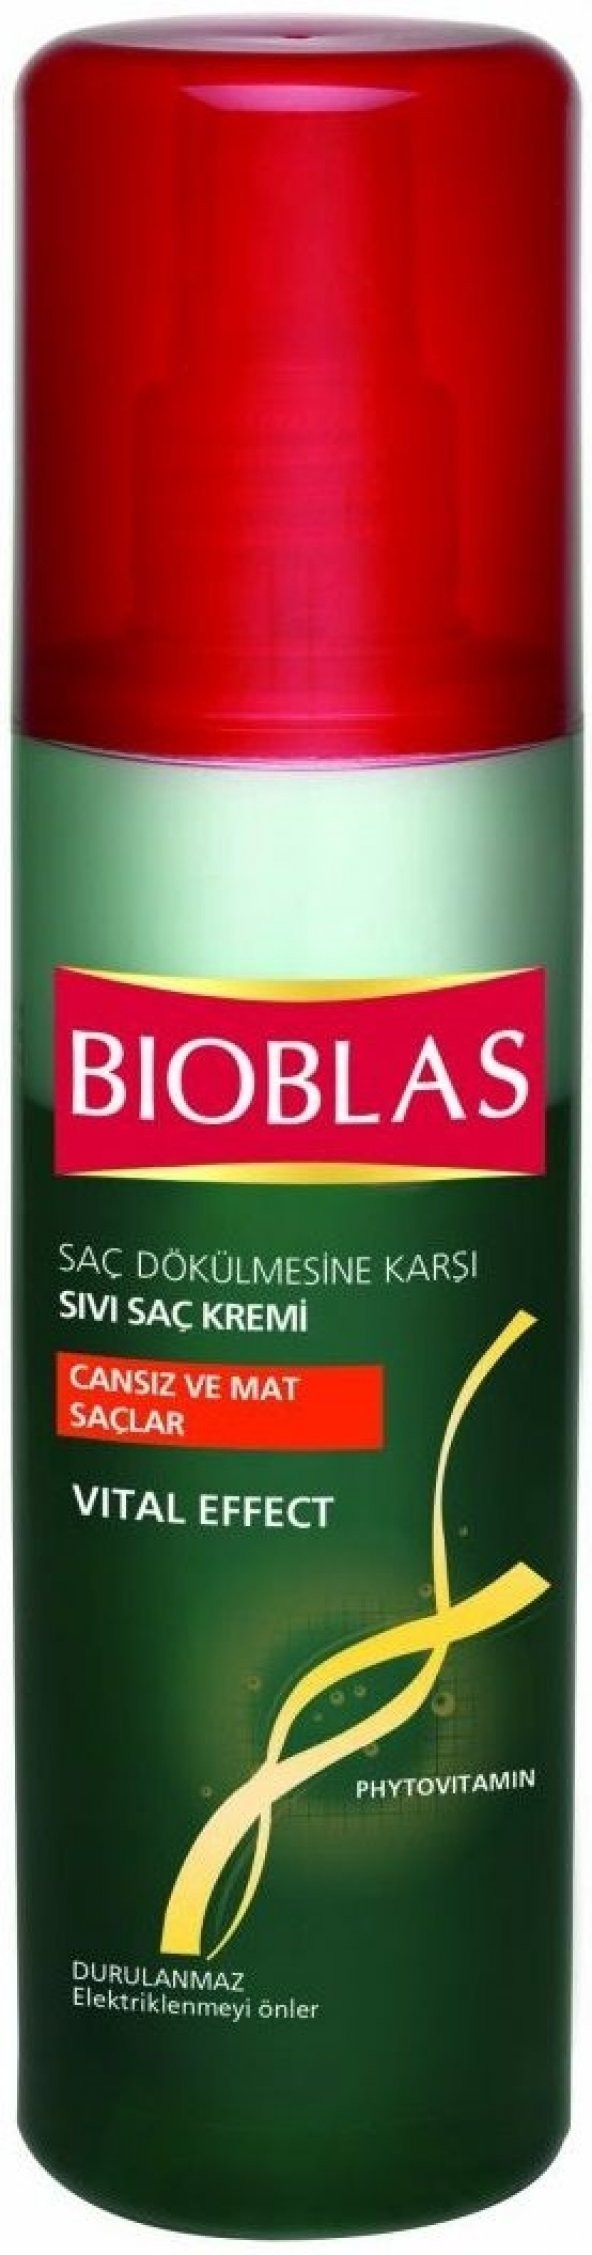 Bioblas Saç Dökülmesine Karşı Sıvı Saç Kremi 200 ml Cansız/Mat